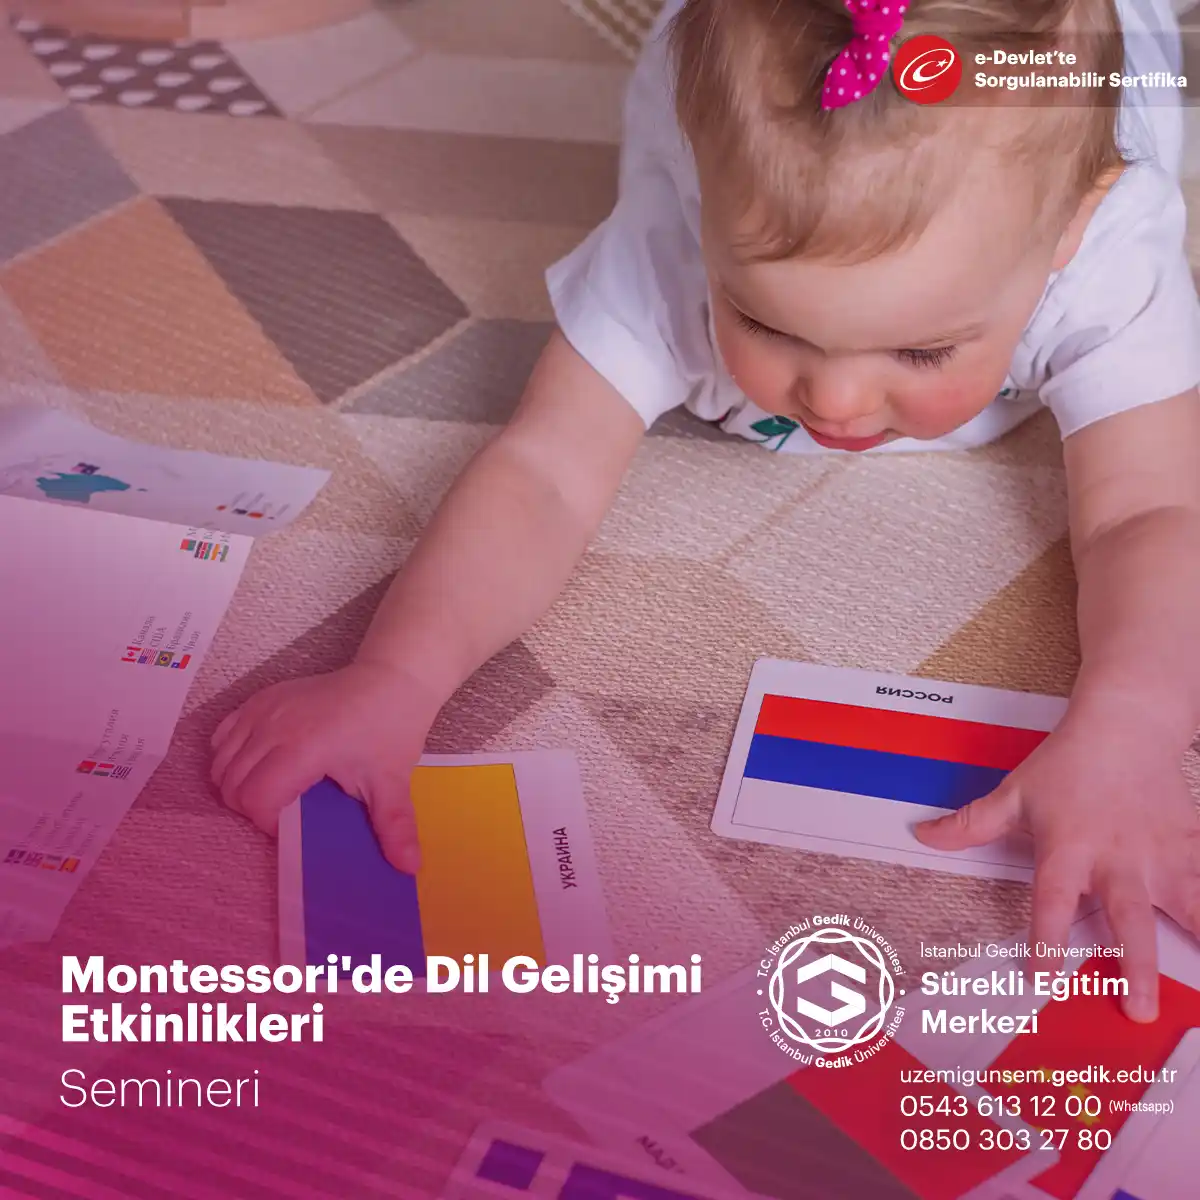 Montessori'de Dil Gelişimi Etkinlikleri Semineri